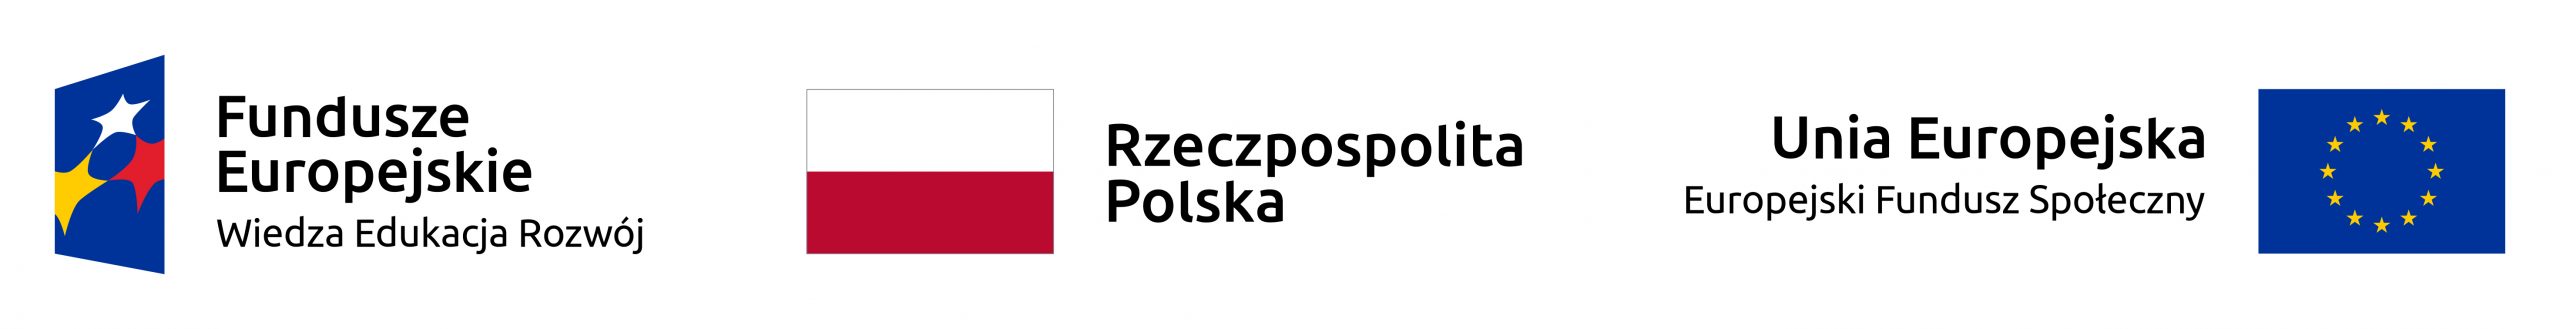 Z lewej strony logotyp Programu Operacyjnego Wiedza Edukacja Rozwój, z prawej strony logo Unii Europejskiej oraz napis Unia Europejska Europejski Funduszu Społeczny. Na środku biało-czerwona flaga Polski z napisem Rzeczypospolita Polska